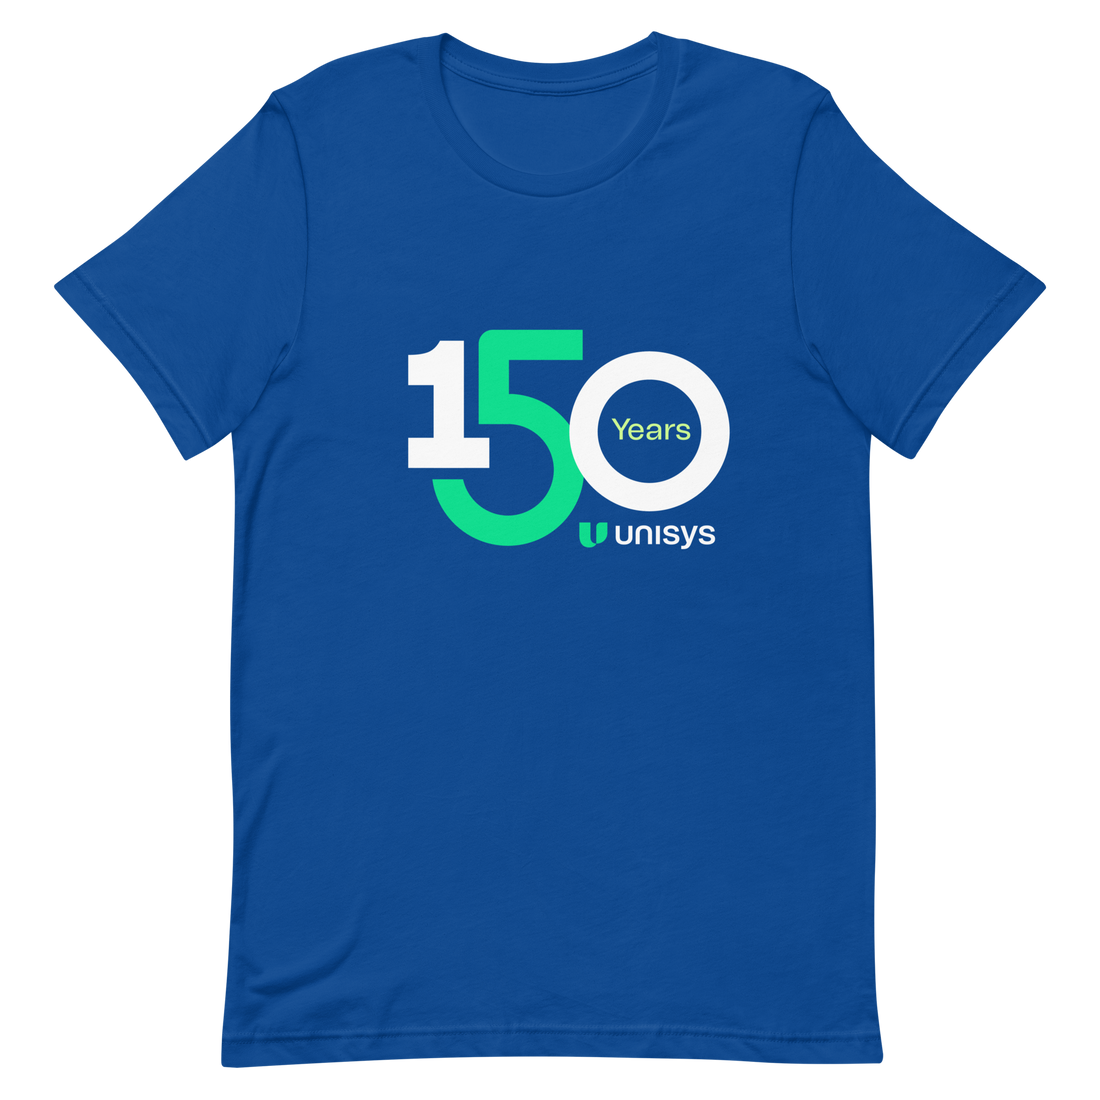 150th Anniversary Unisex T-Shirt